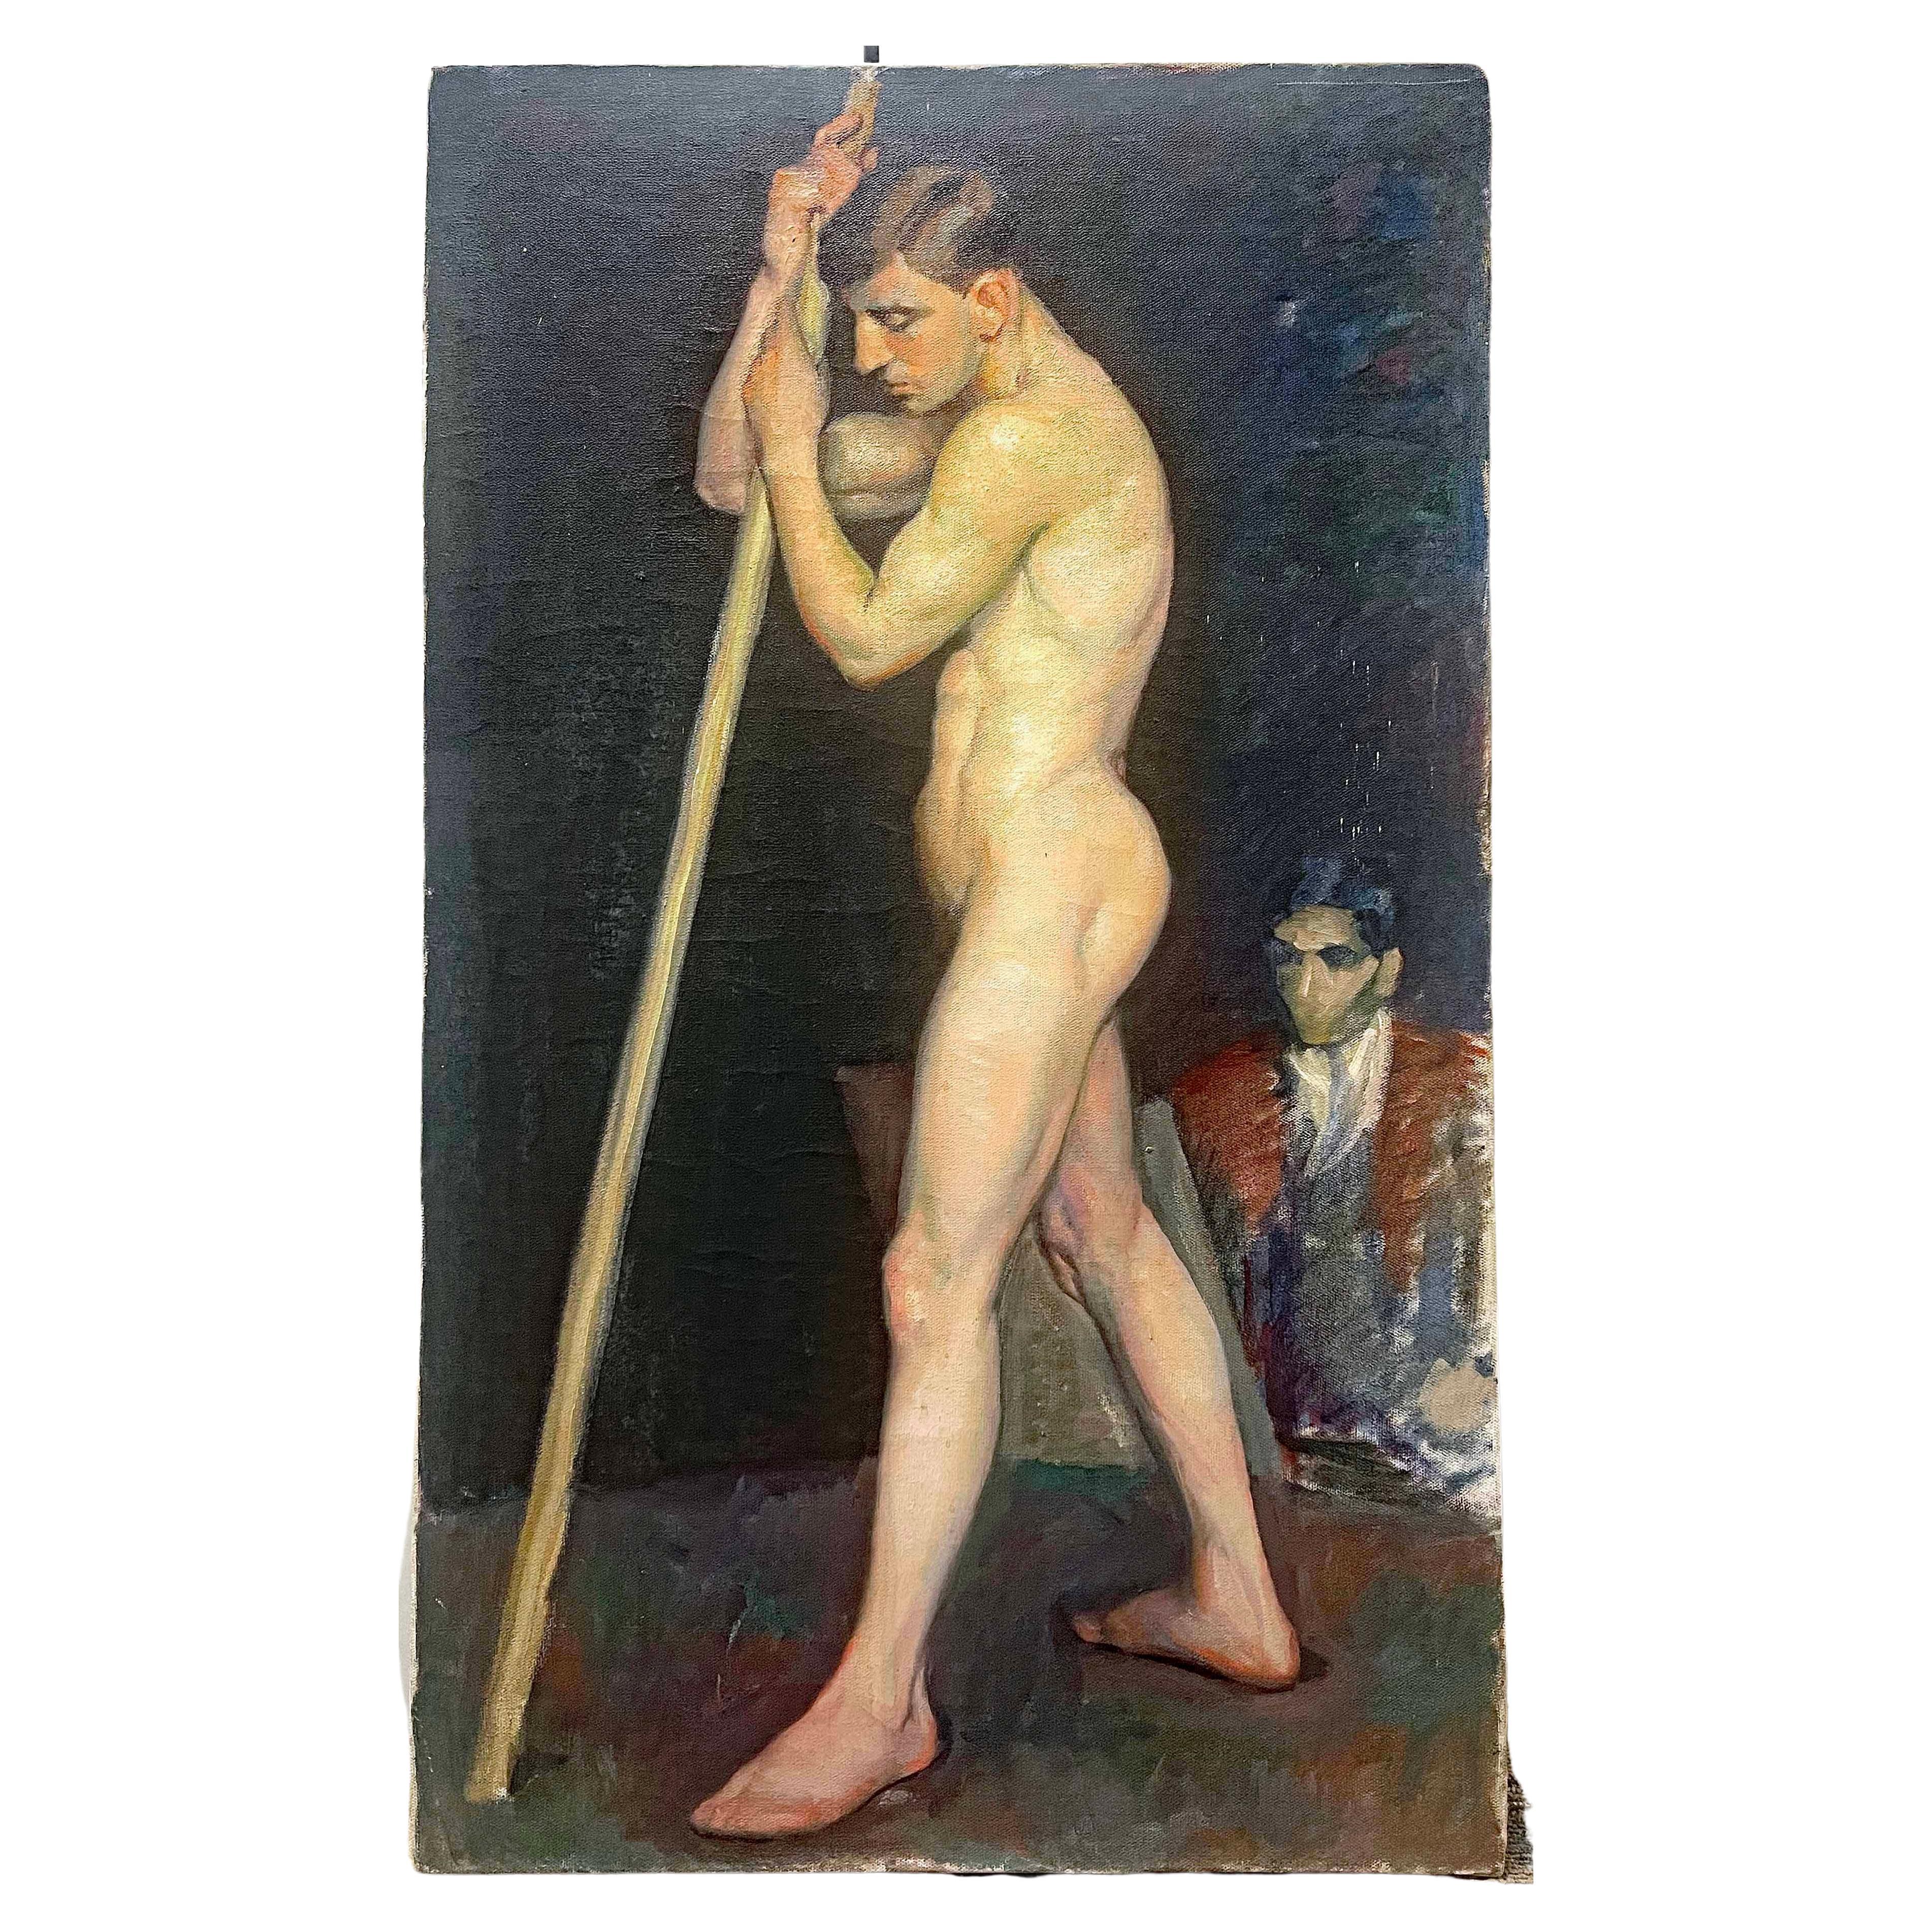 "Une jeune fille avec un poteau", superbe peinture d'un nu masculin par Sigvard Mohn, années 1910